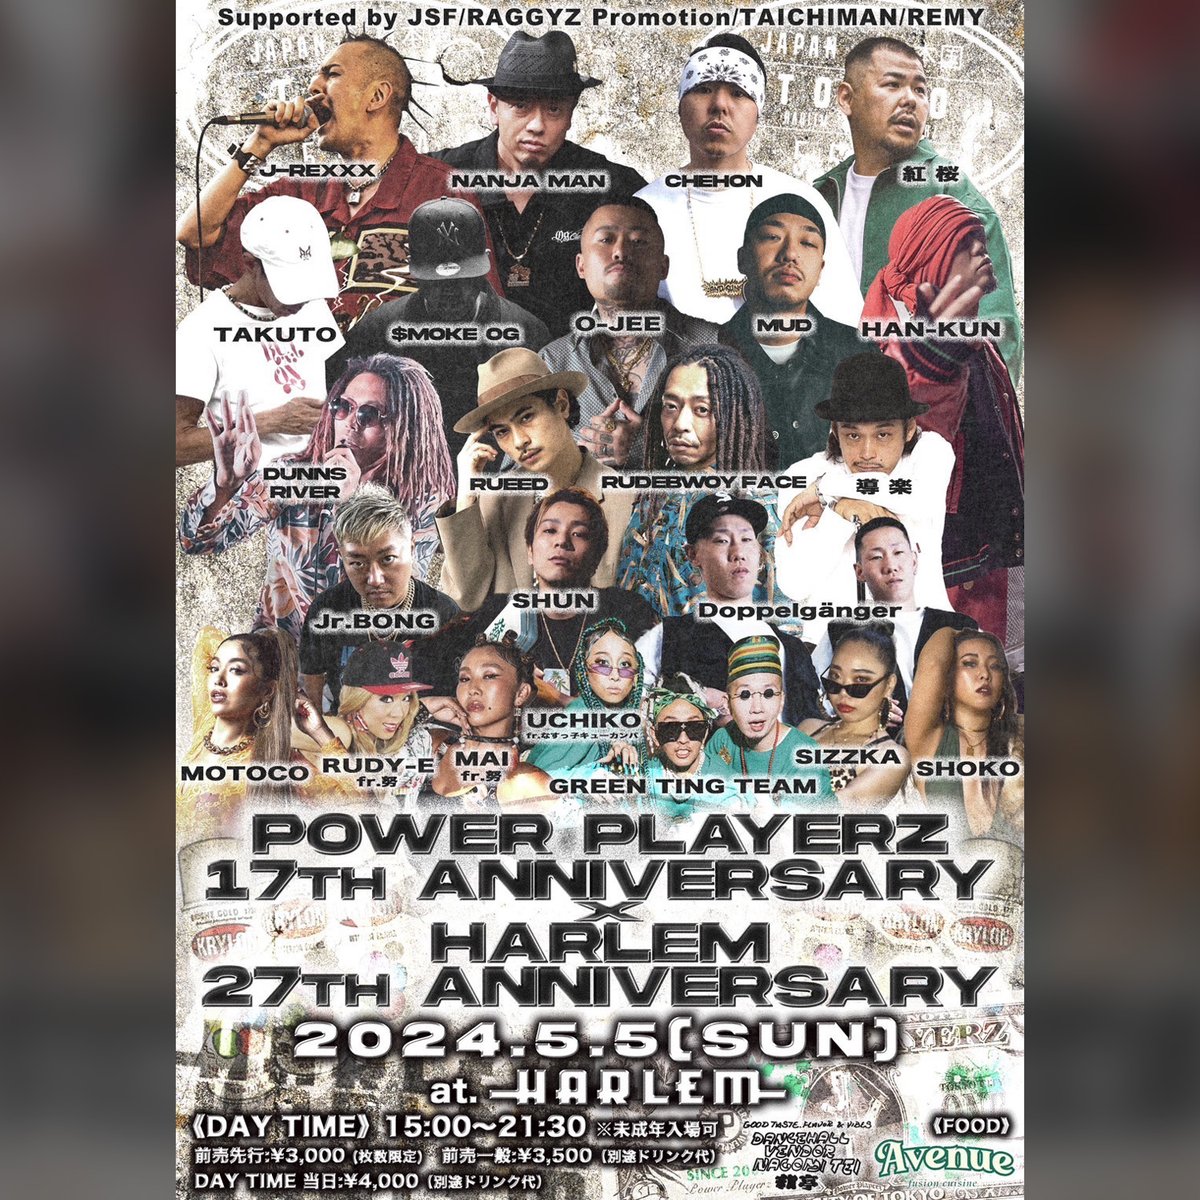 5月5日(日)に開催される POWER PLAYERZ 18th ANNIVERSARY × HARLEM 27th ANNIVERSARY PARTYに HAN-KUNの出演が決定！ han-kun.134r.com/schedule/detai… #HANｰKUN